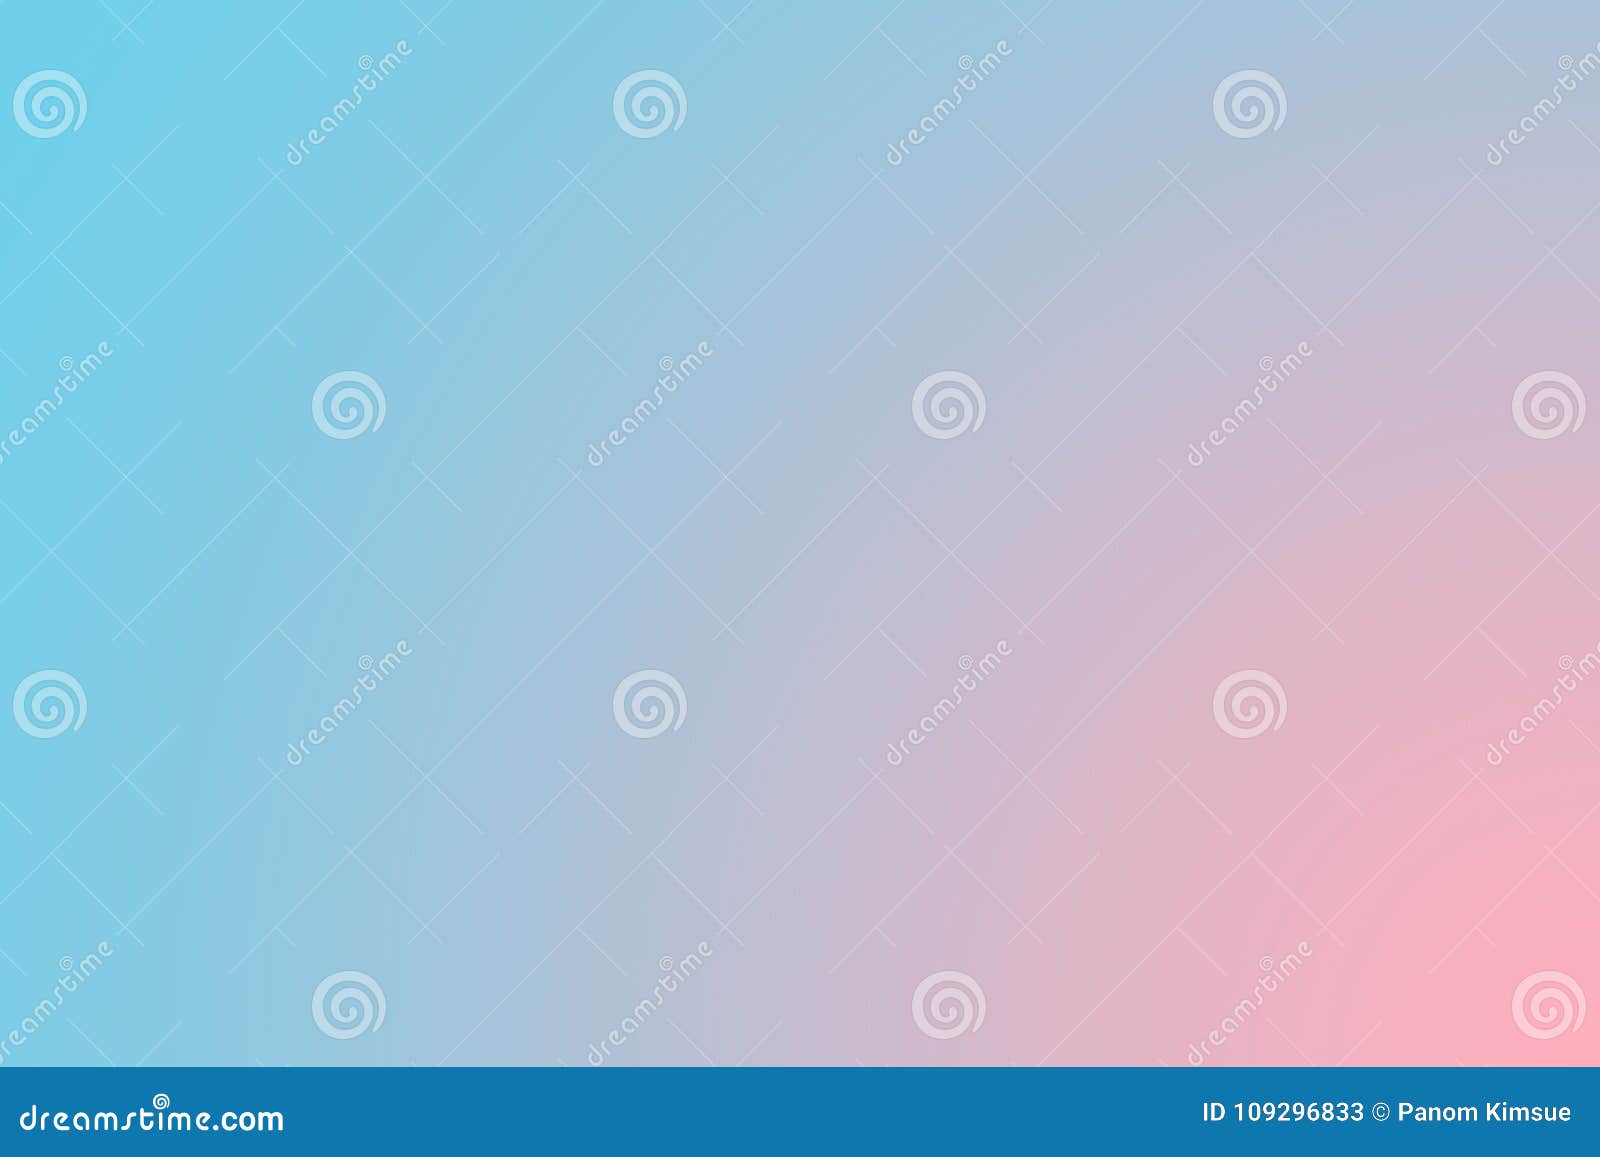 Brandamente o doce borrou o fundo azul e cor-de-rosa da cor pastel Papel de parede abstrato do desktop do inclinação